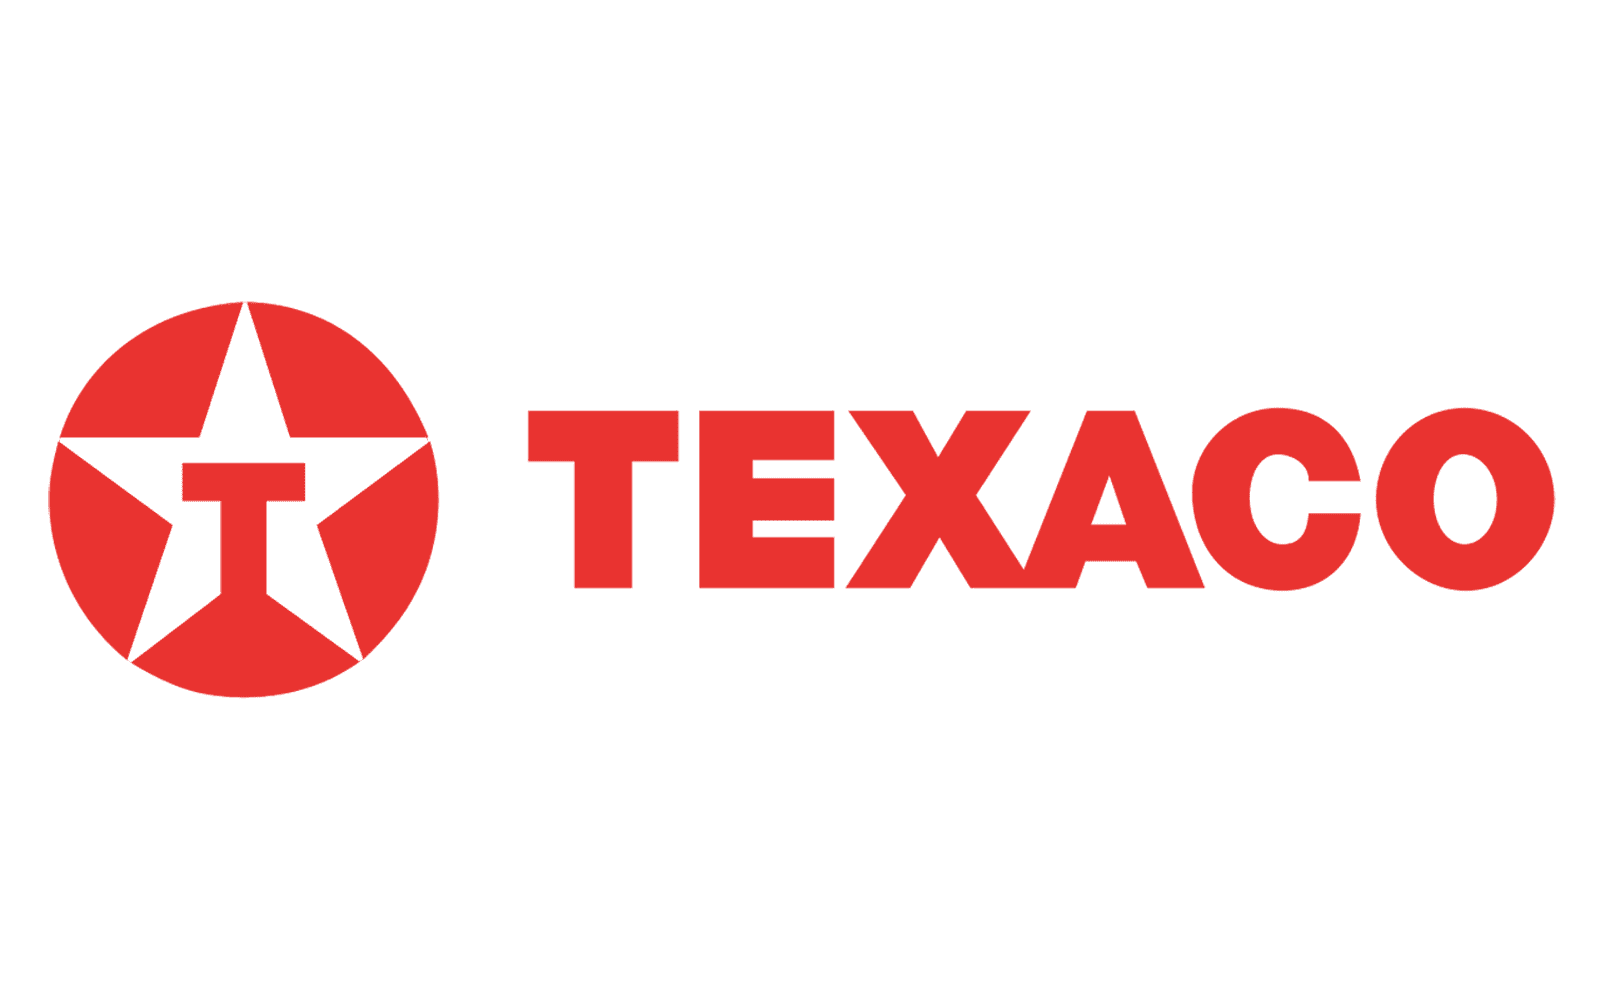 Texaco-Logo